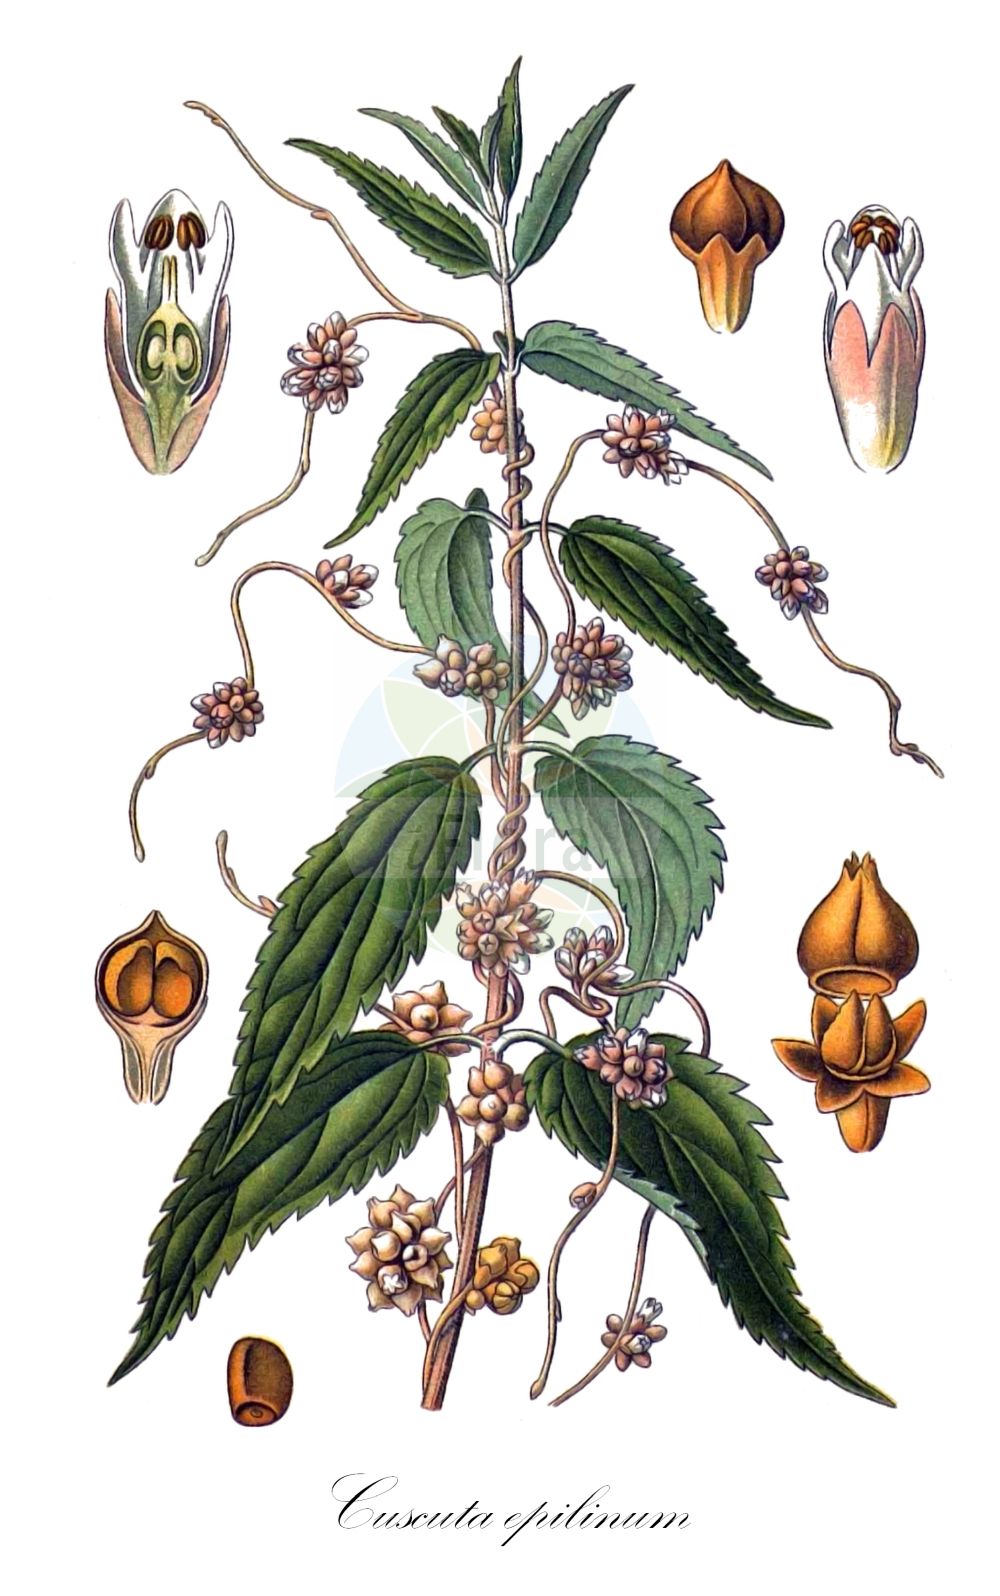 Historische Abbildung von Cuscuta epilinum (Flachs-Seide - Flax Dodder). ---- Historical Drawing of Cuscuta epilinum (Flachs-Seide - Flax Dodder).(Cuscuta epilinum,Flachs-Seide,Flax Dodder,Cuscuta epilinum,Flachs-Seide,Flachs-Teufelszwirn,Lein-Seide,Flax Dodder,Cuscuta,Seide,Dodder,Convolvulaceae,Windengewächse,Bindweed family,Masclef (1890-1893))